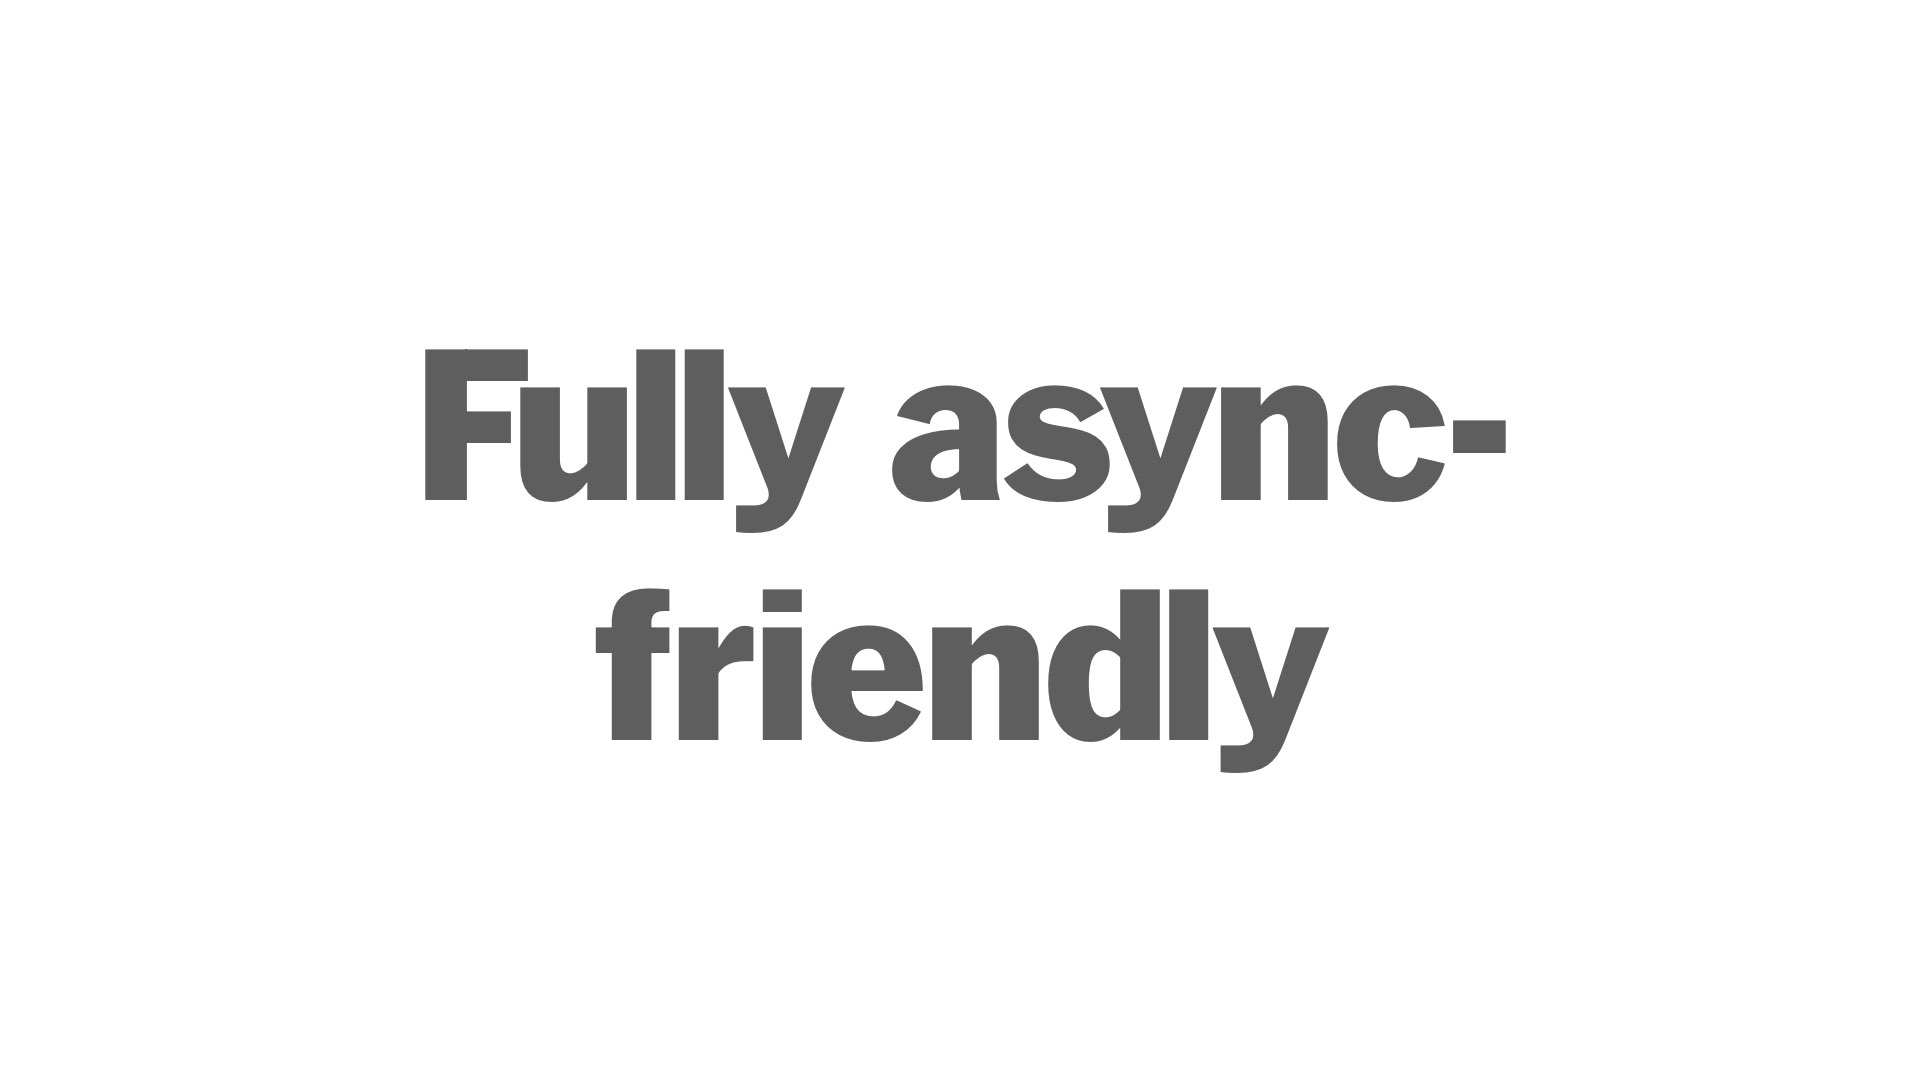 Fully async-friendly